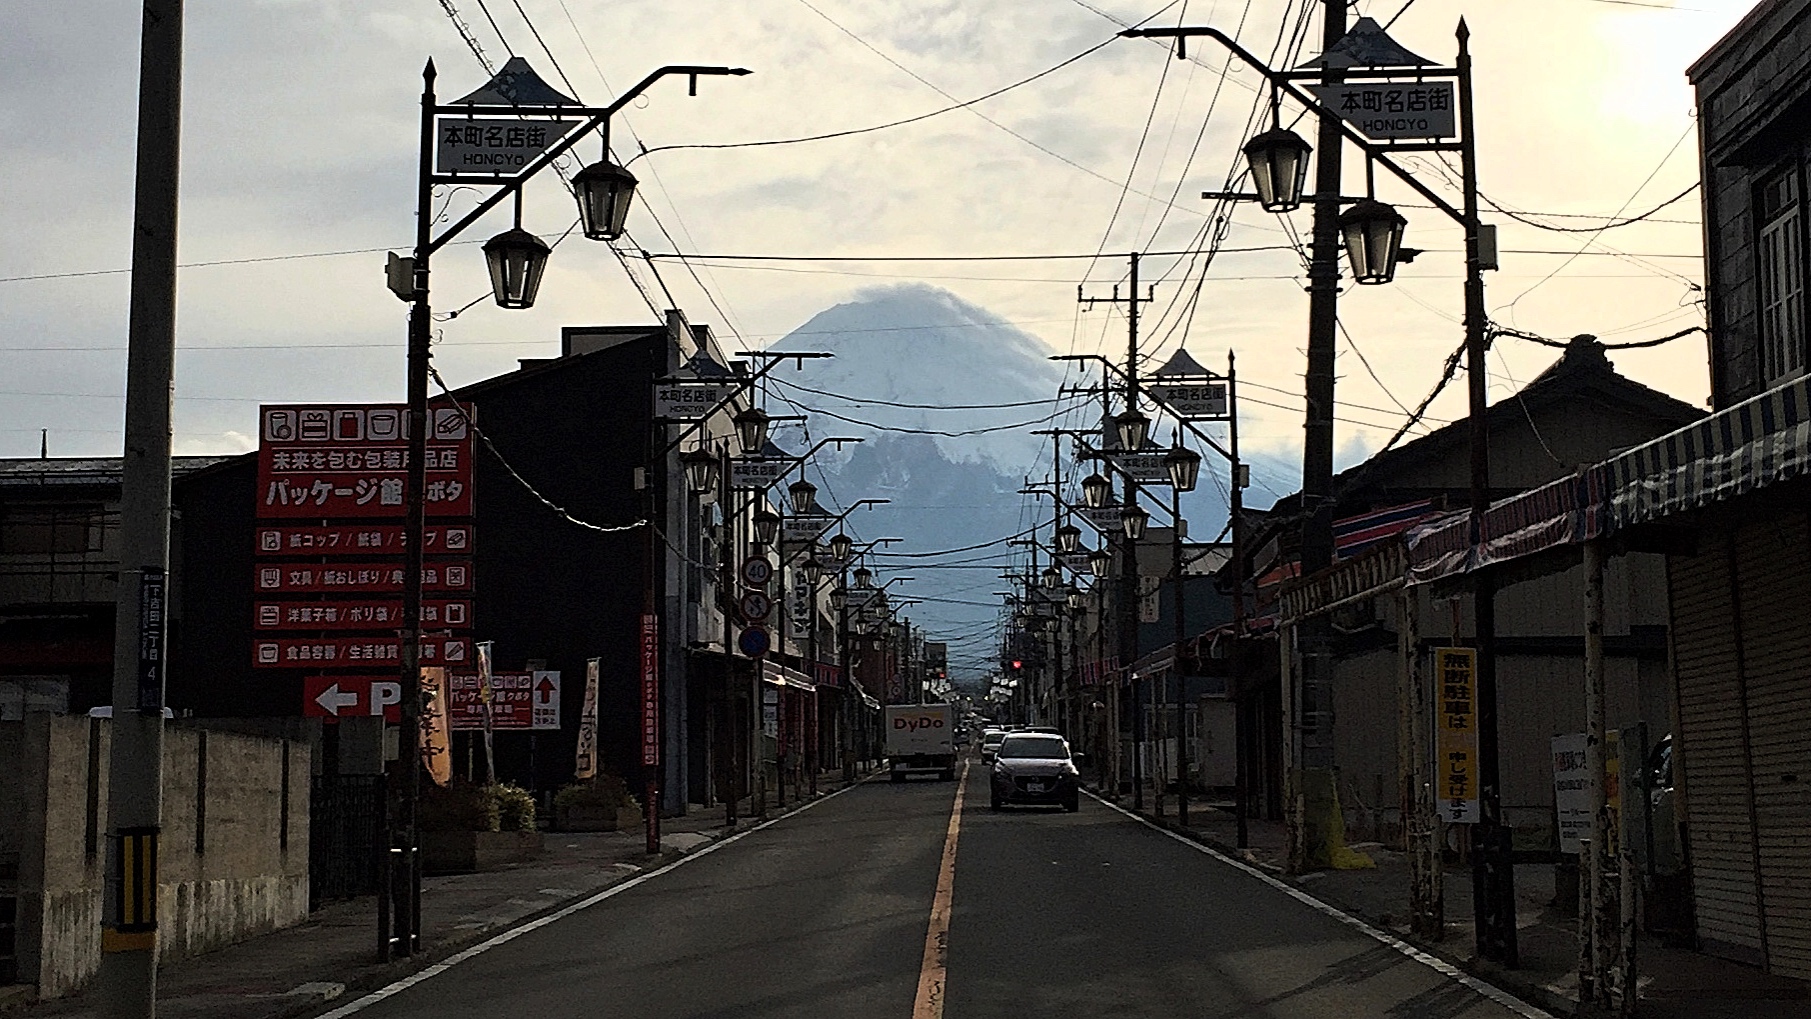 Der Fuji und die Strommasten.